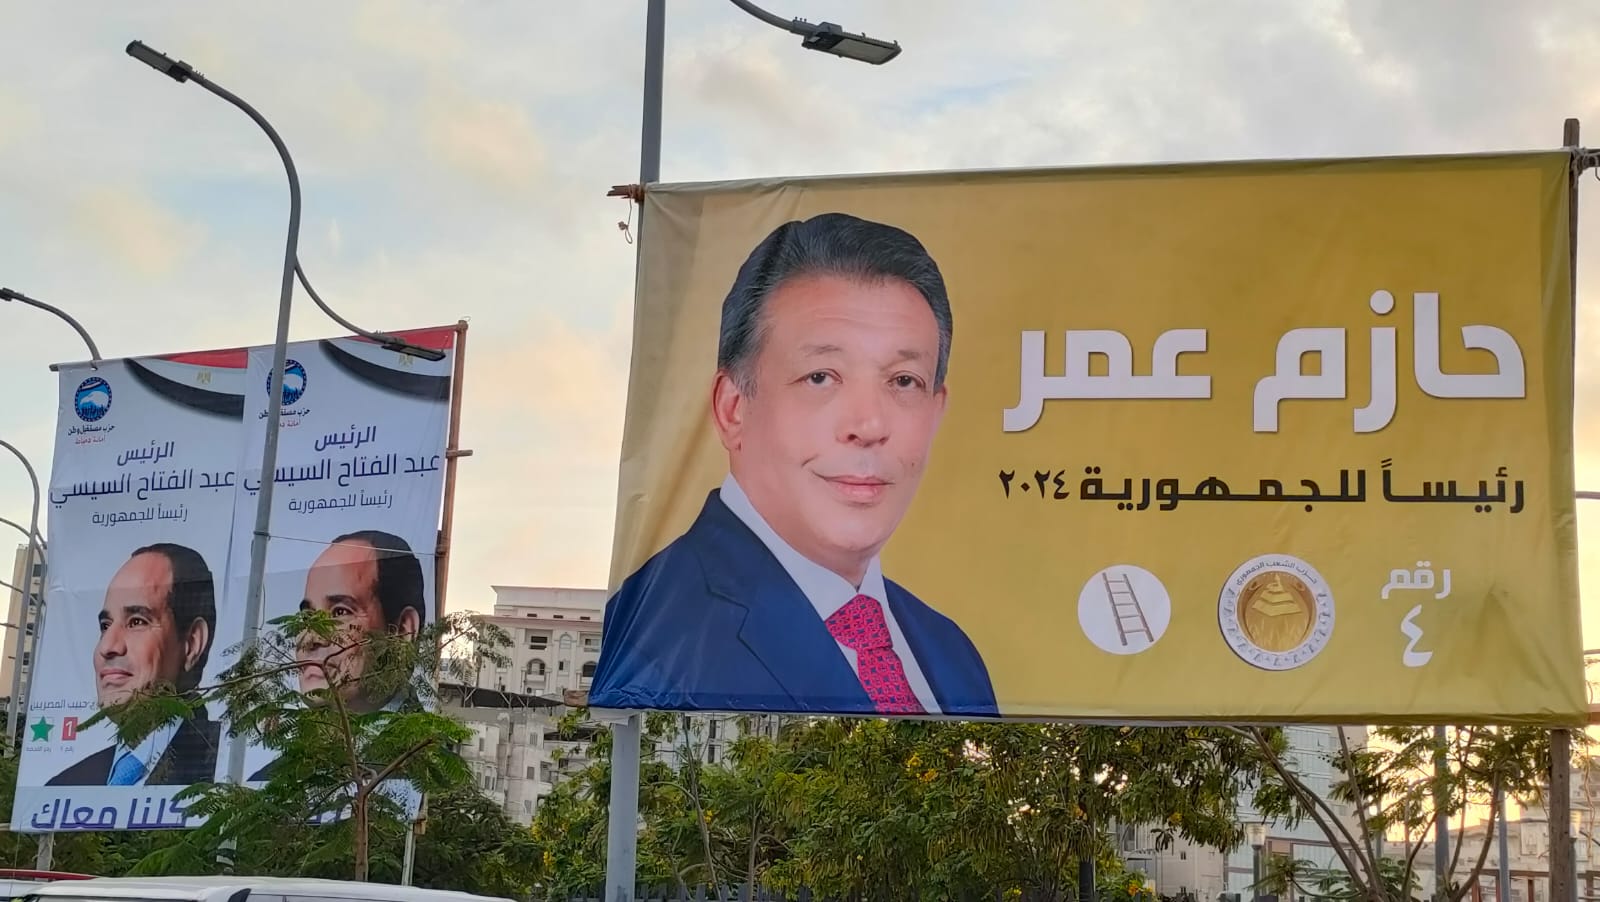 صور المرشح الرئاسي حازم عمر (4)